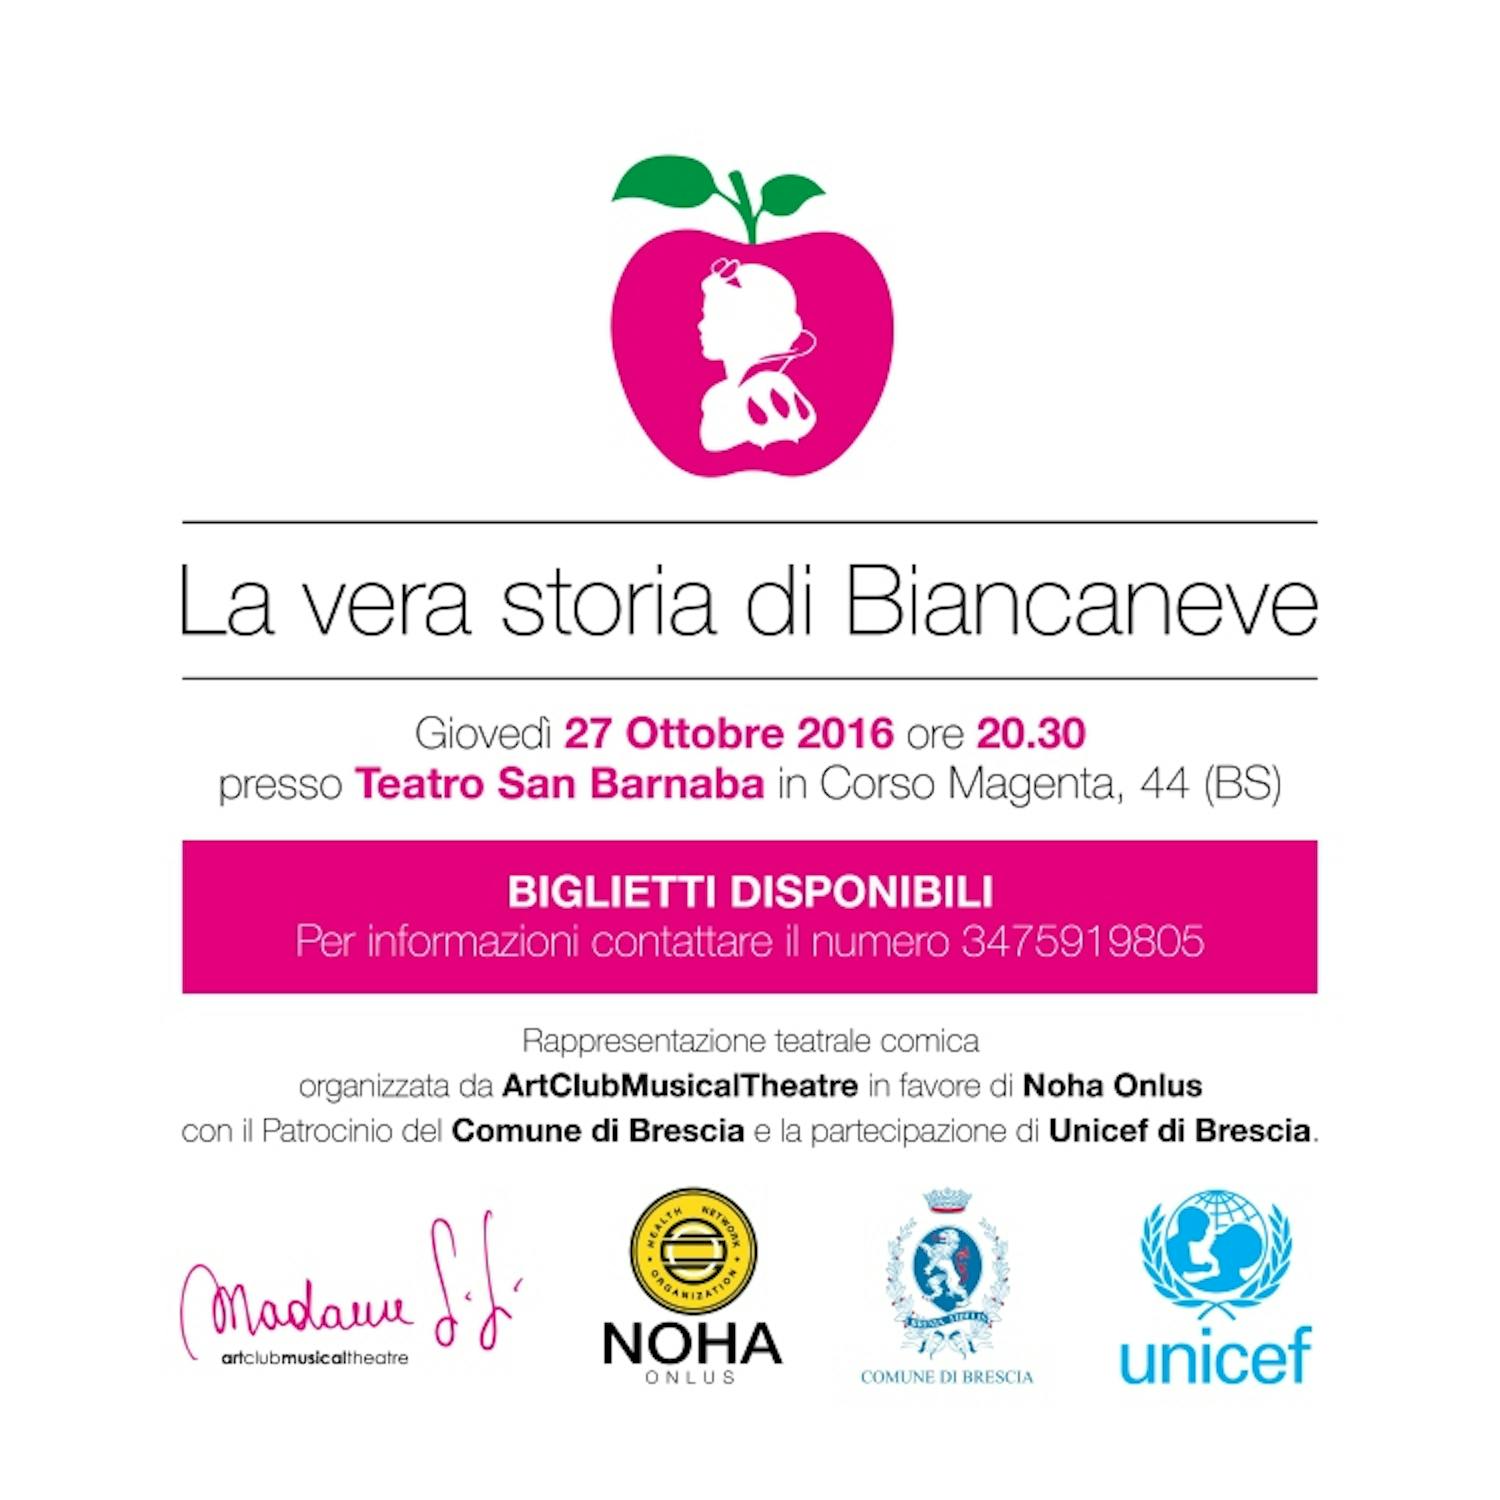 Locandina dell'evento di Brescia del 27 ottobre 2016